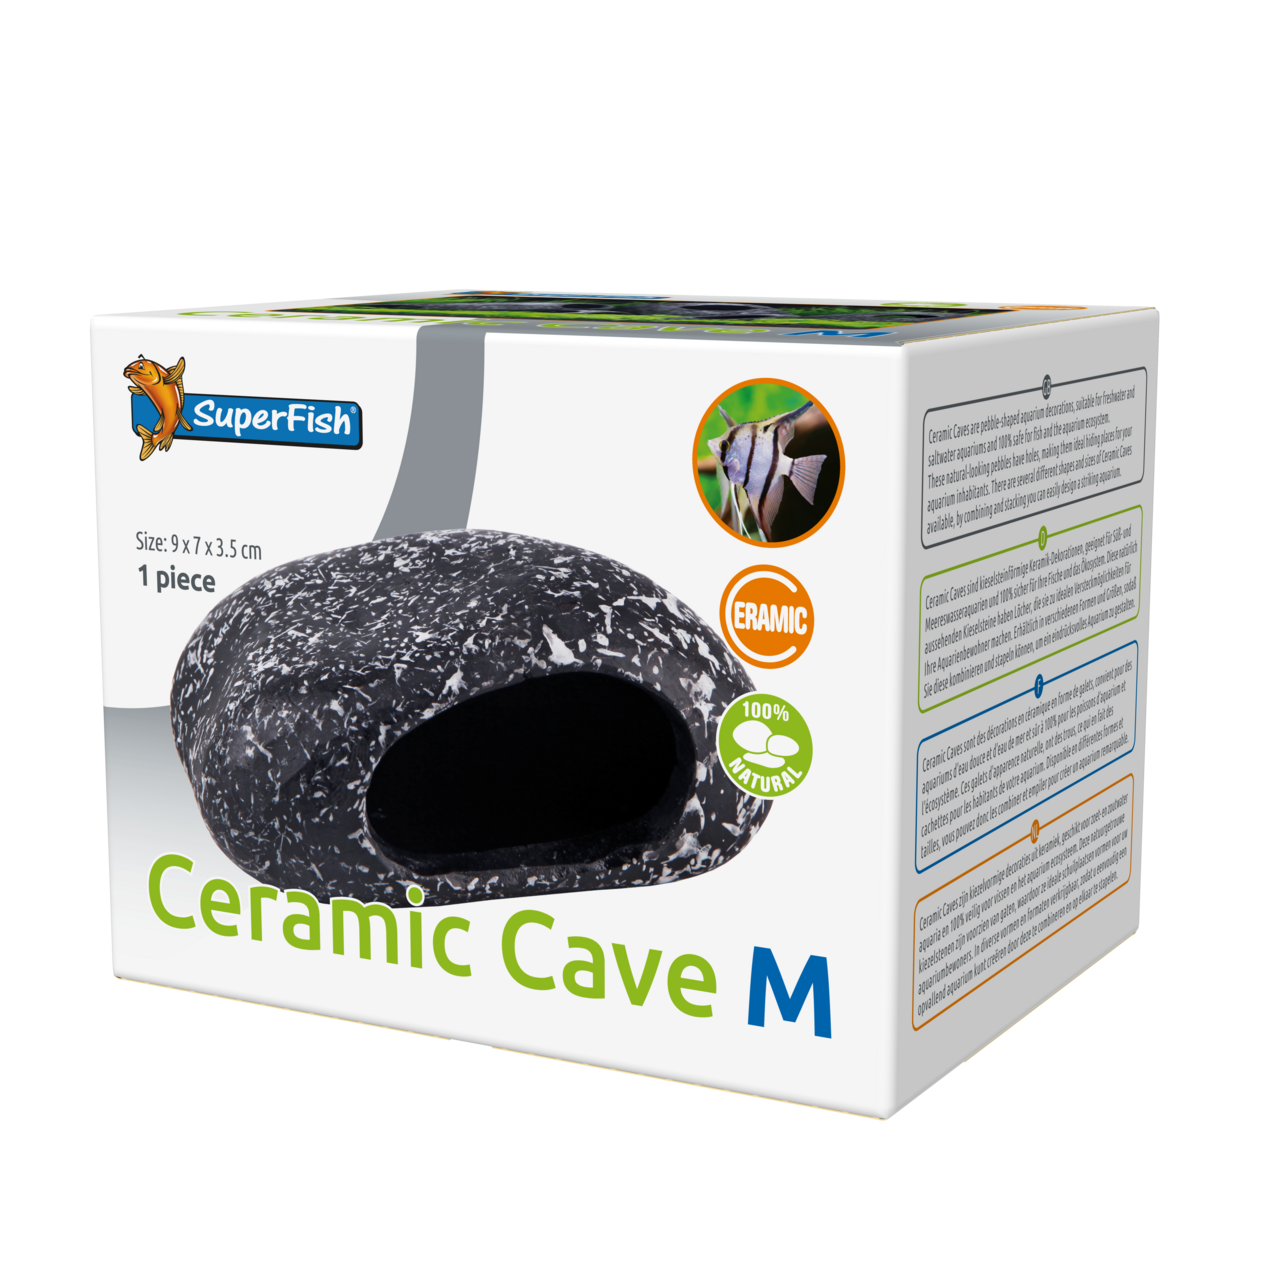 Ceramic Cave M